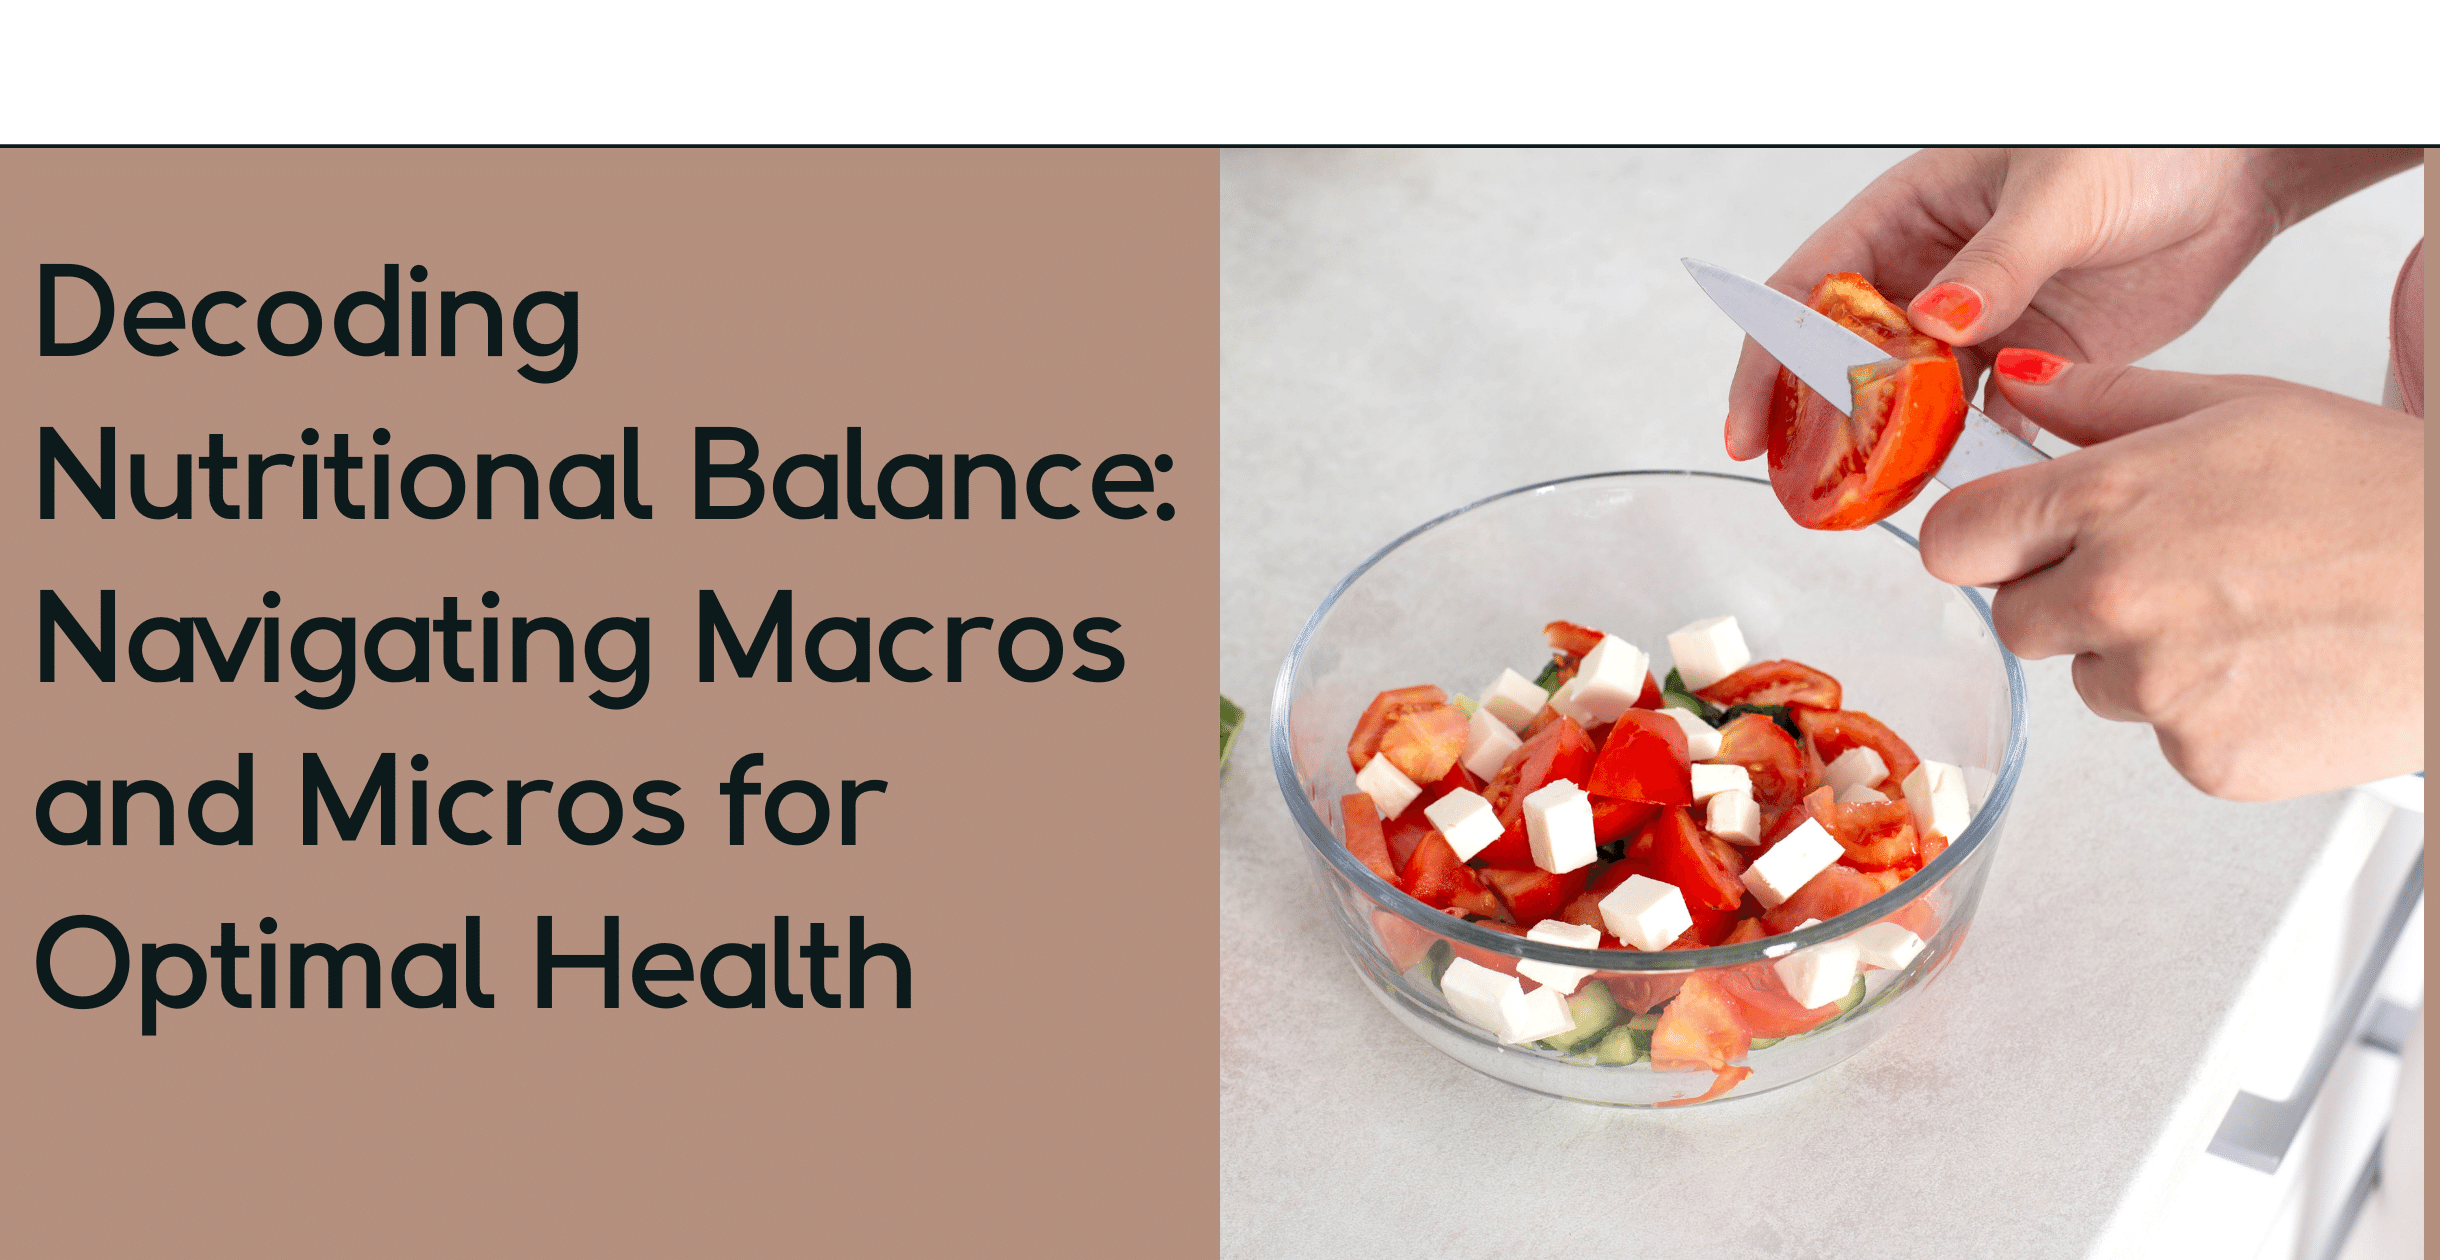 Decoding Nutritional Balance: Navigating Macros and Micros for Optimal Health